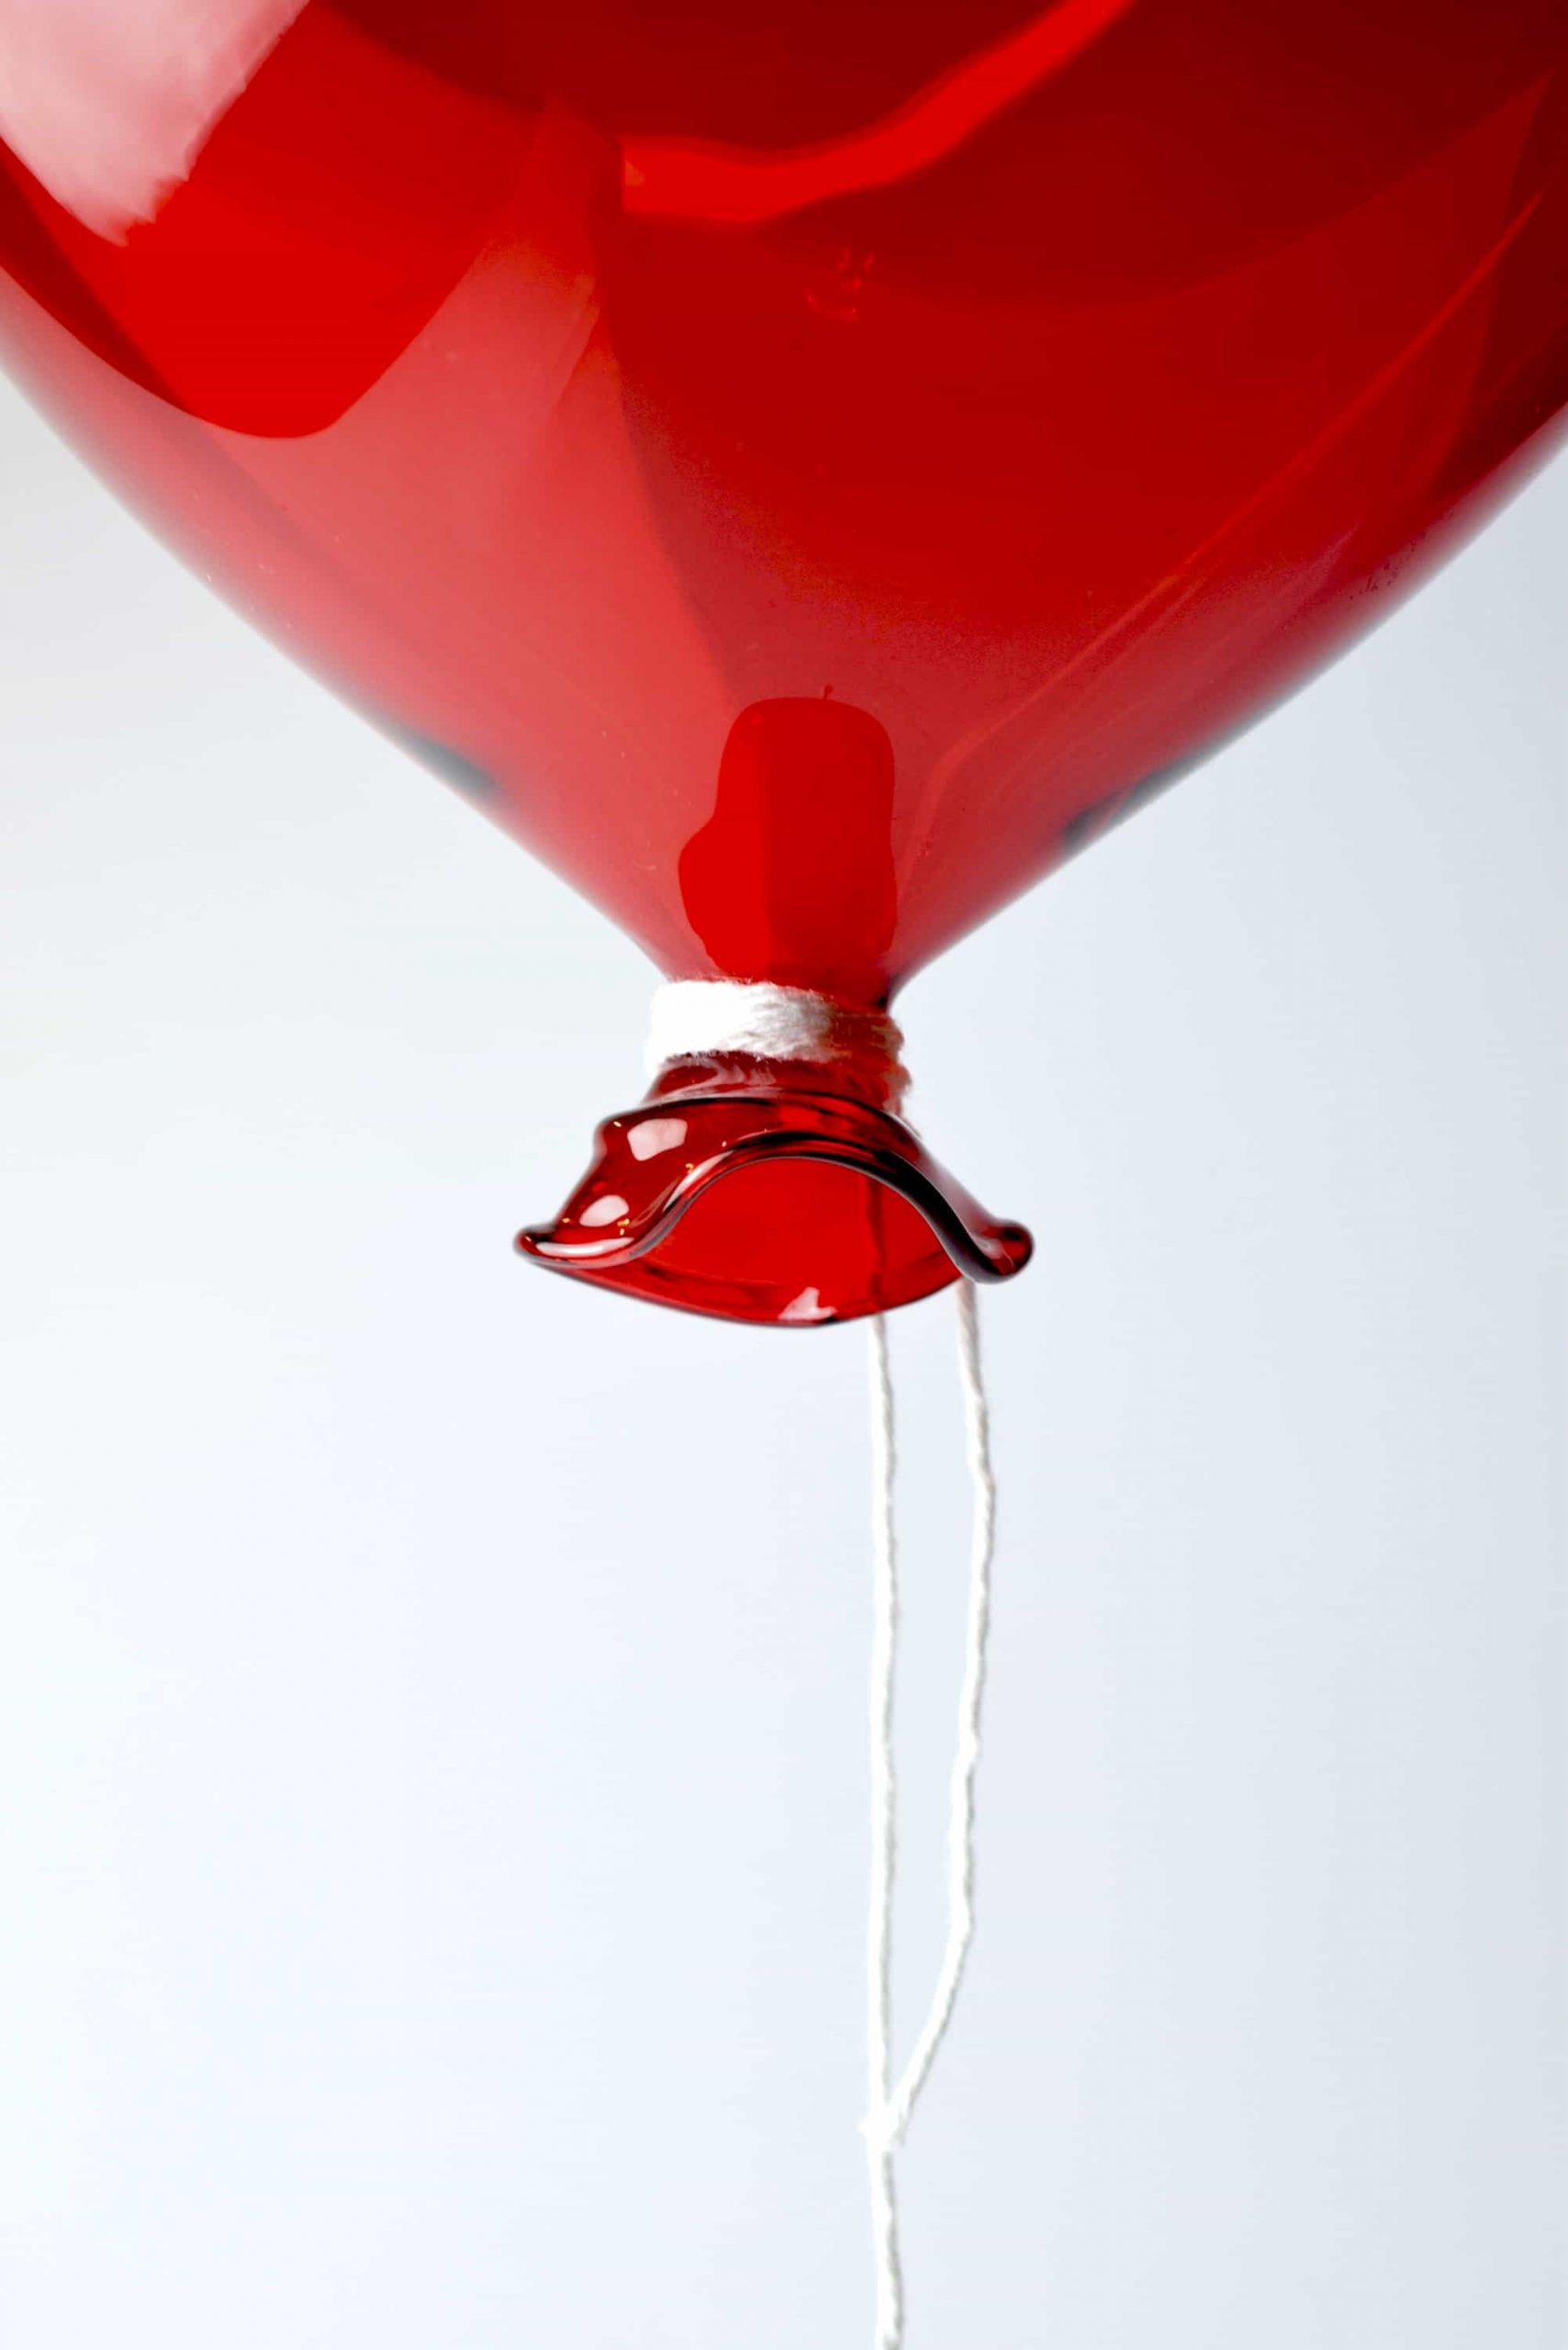 Balloon To Hang